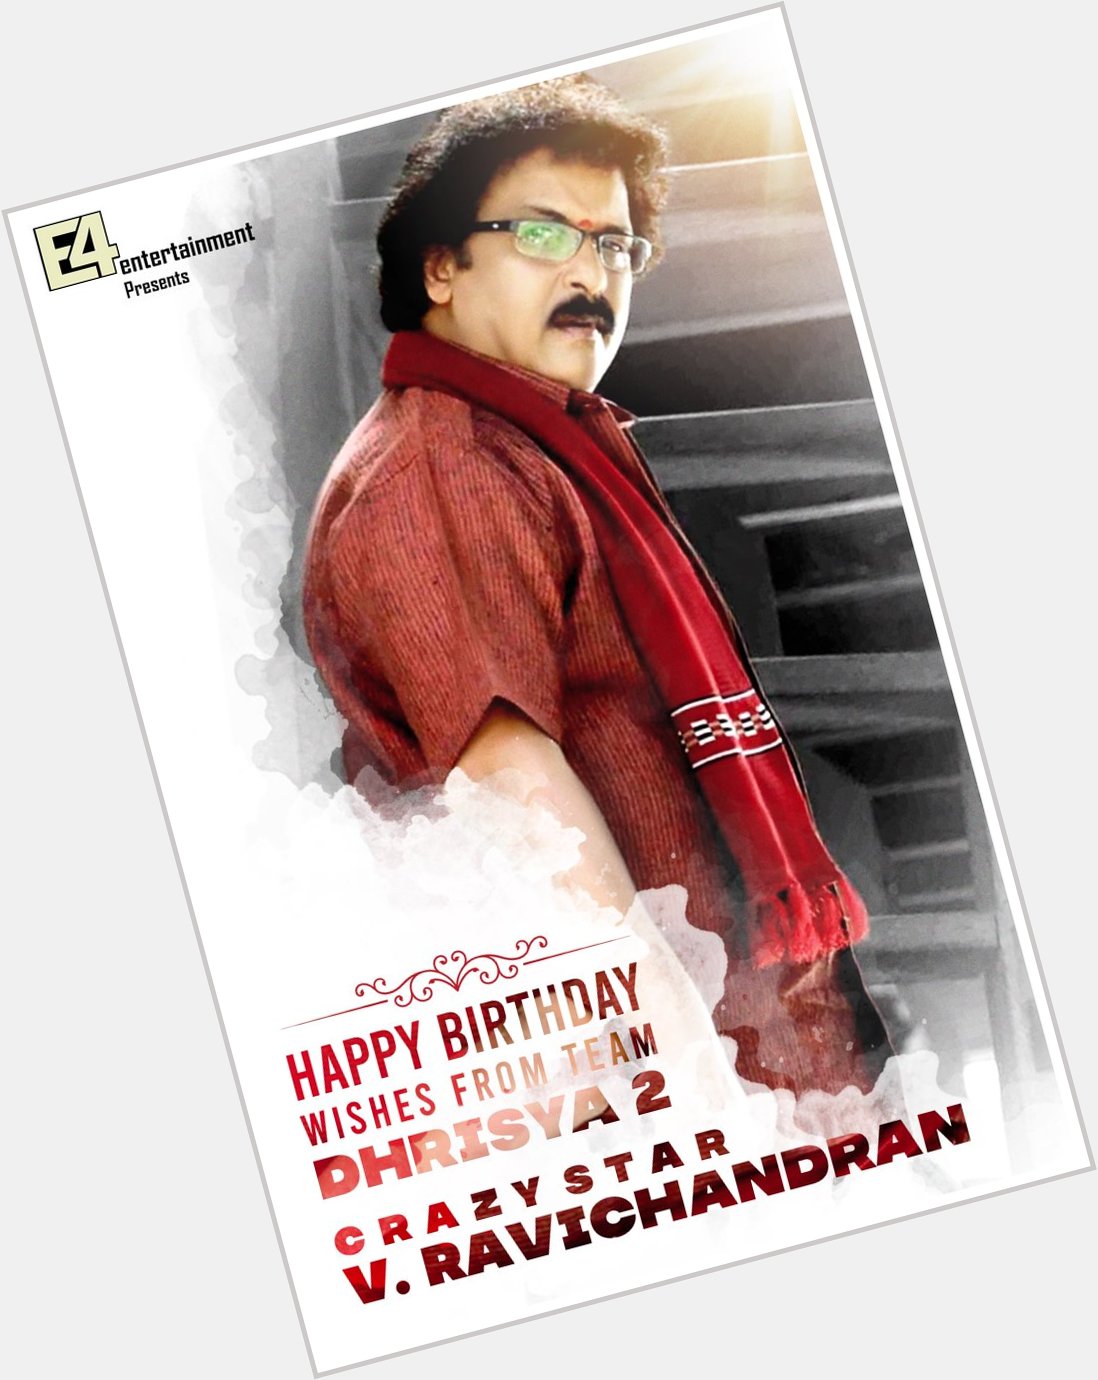 Happy Birthday to Crazy Star V. Ravichandran Wishes from team  